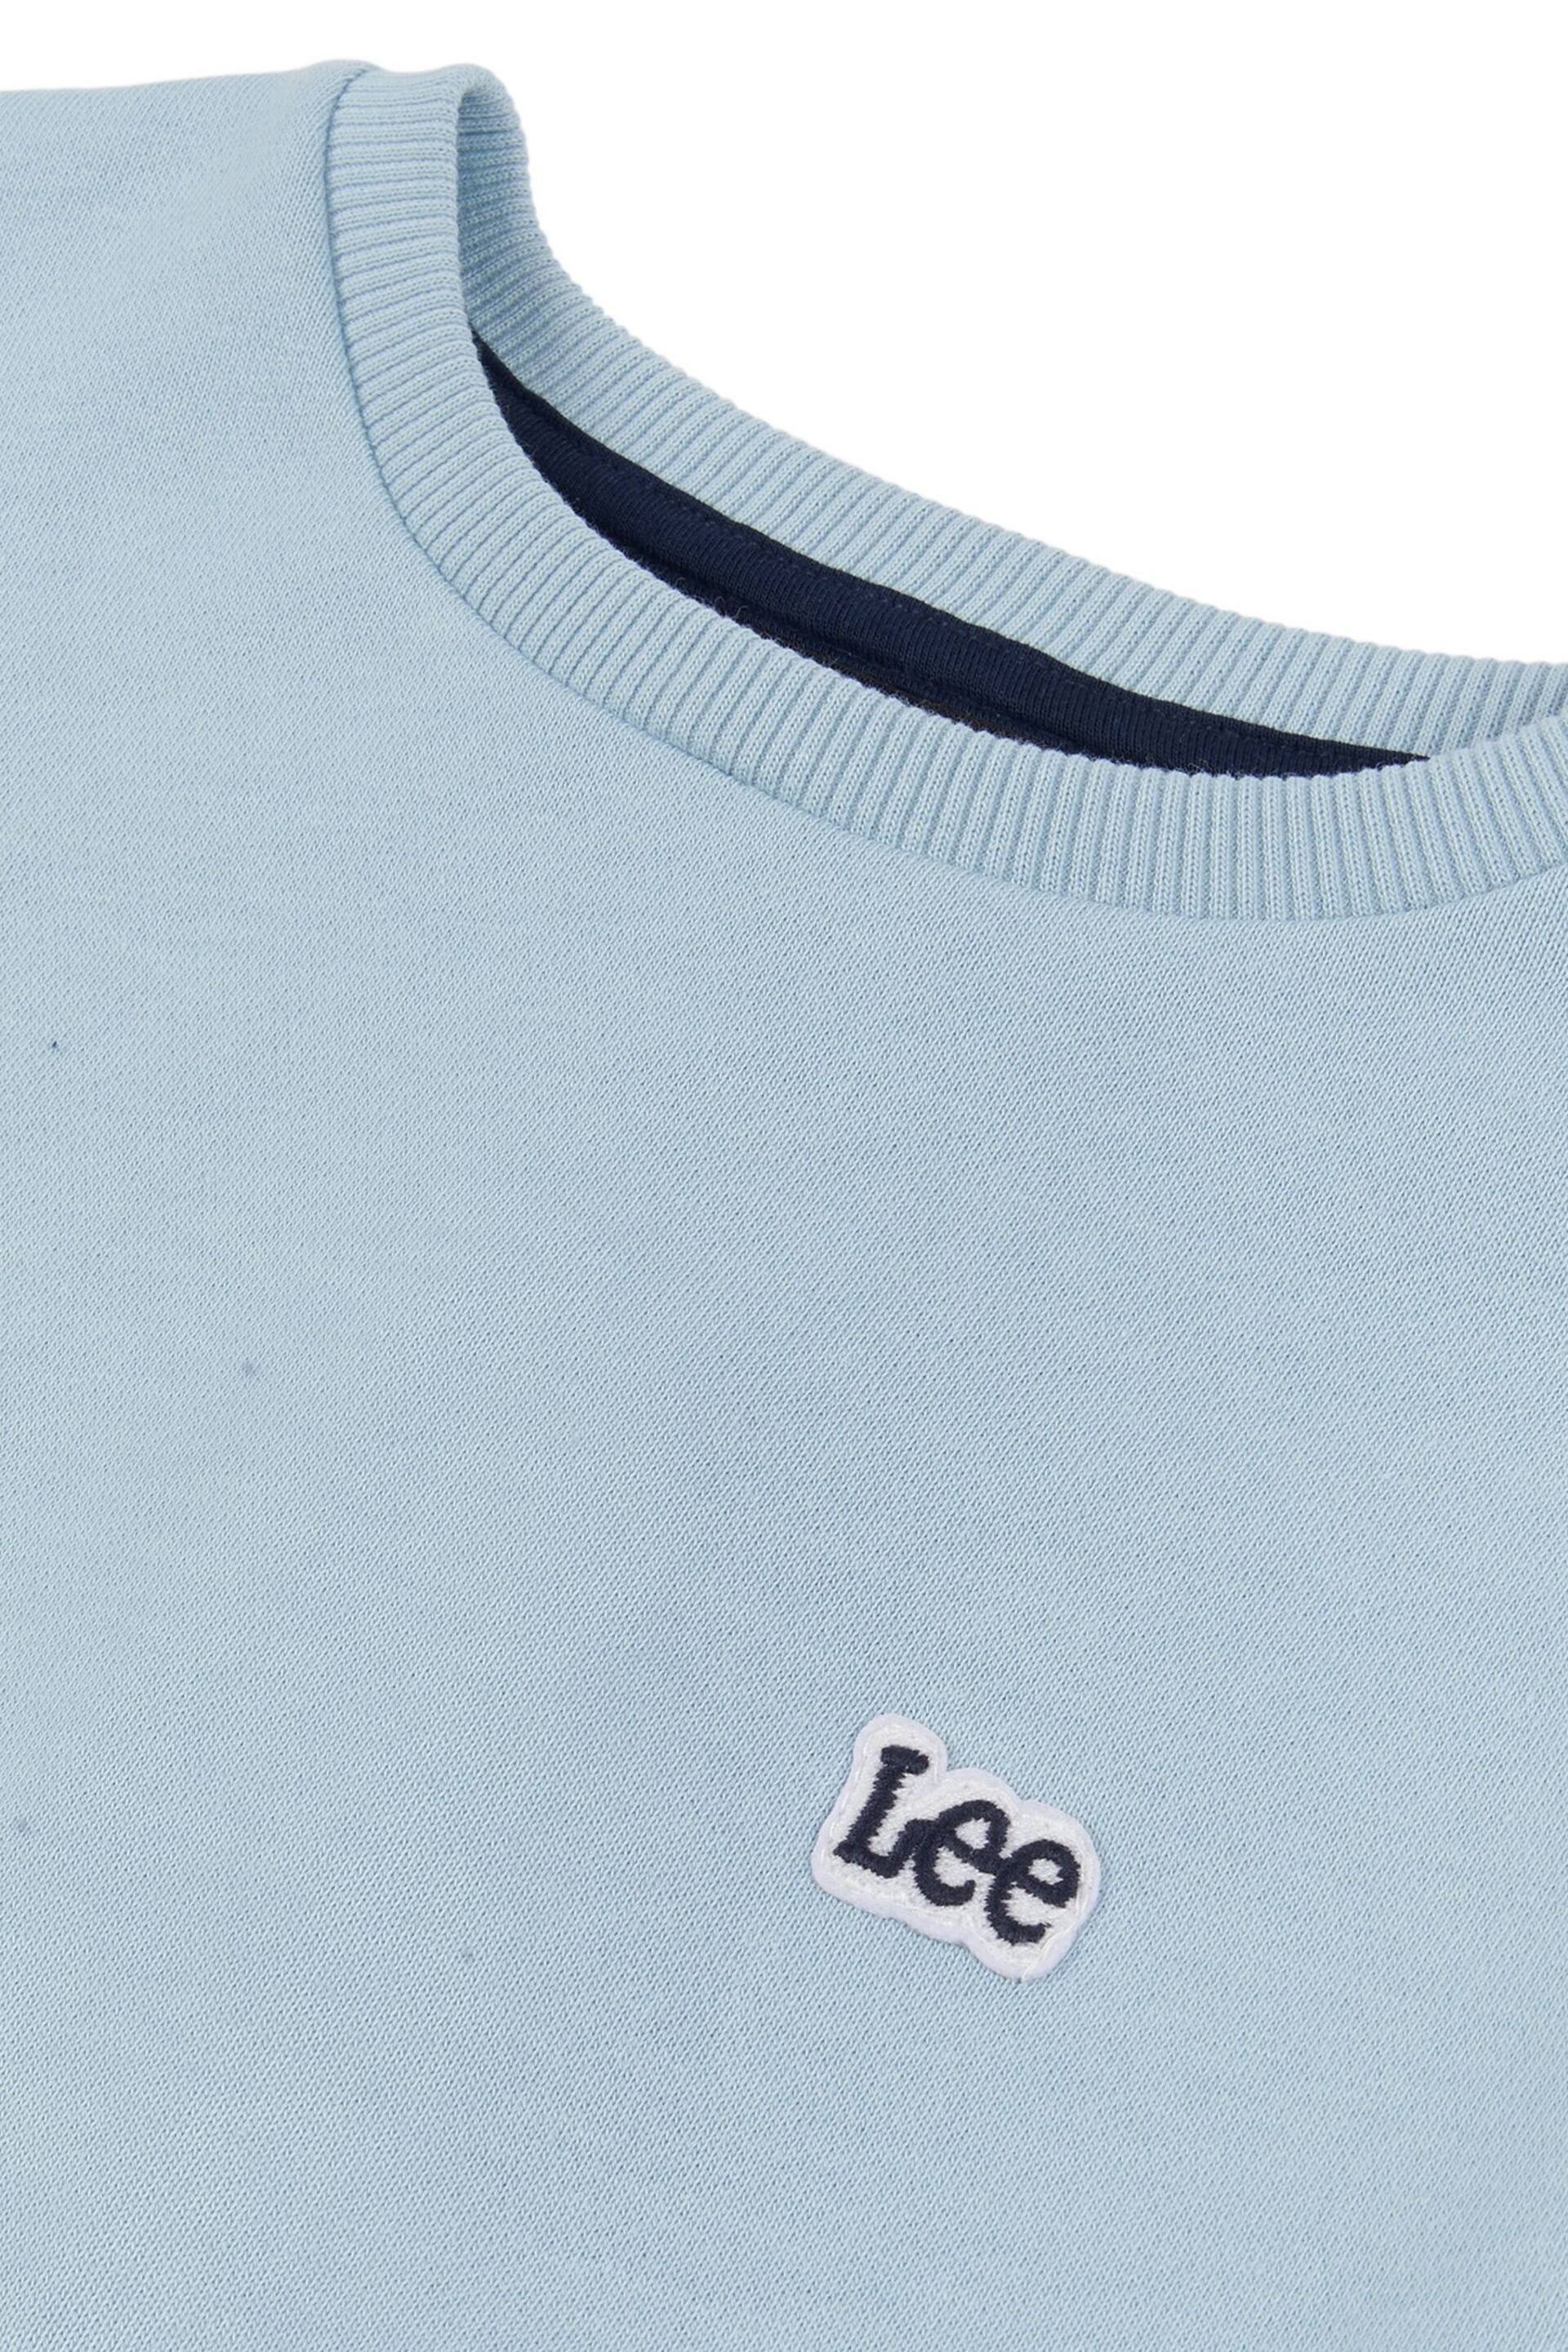 Lee Boys Badge Sweatshirt - Image 8 of 8